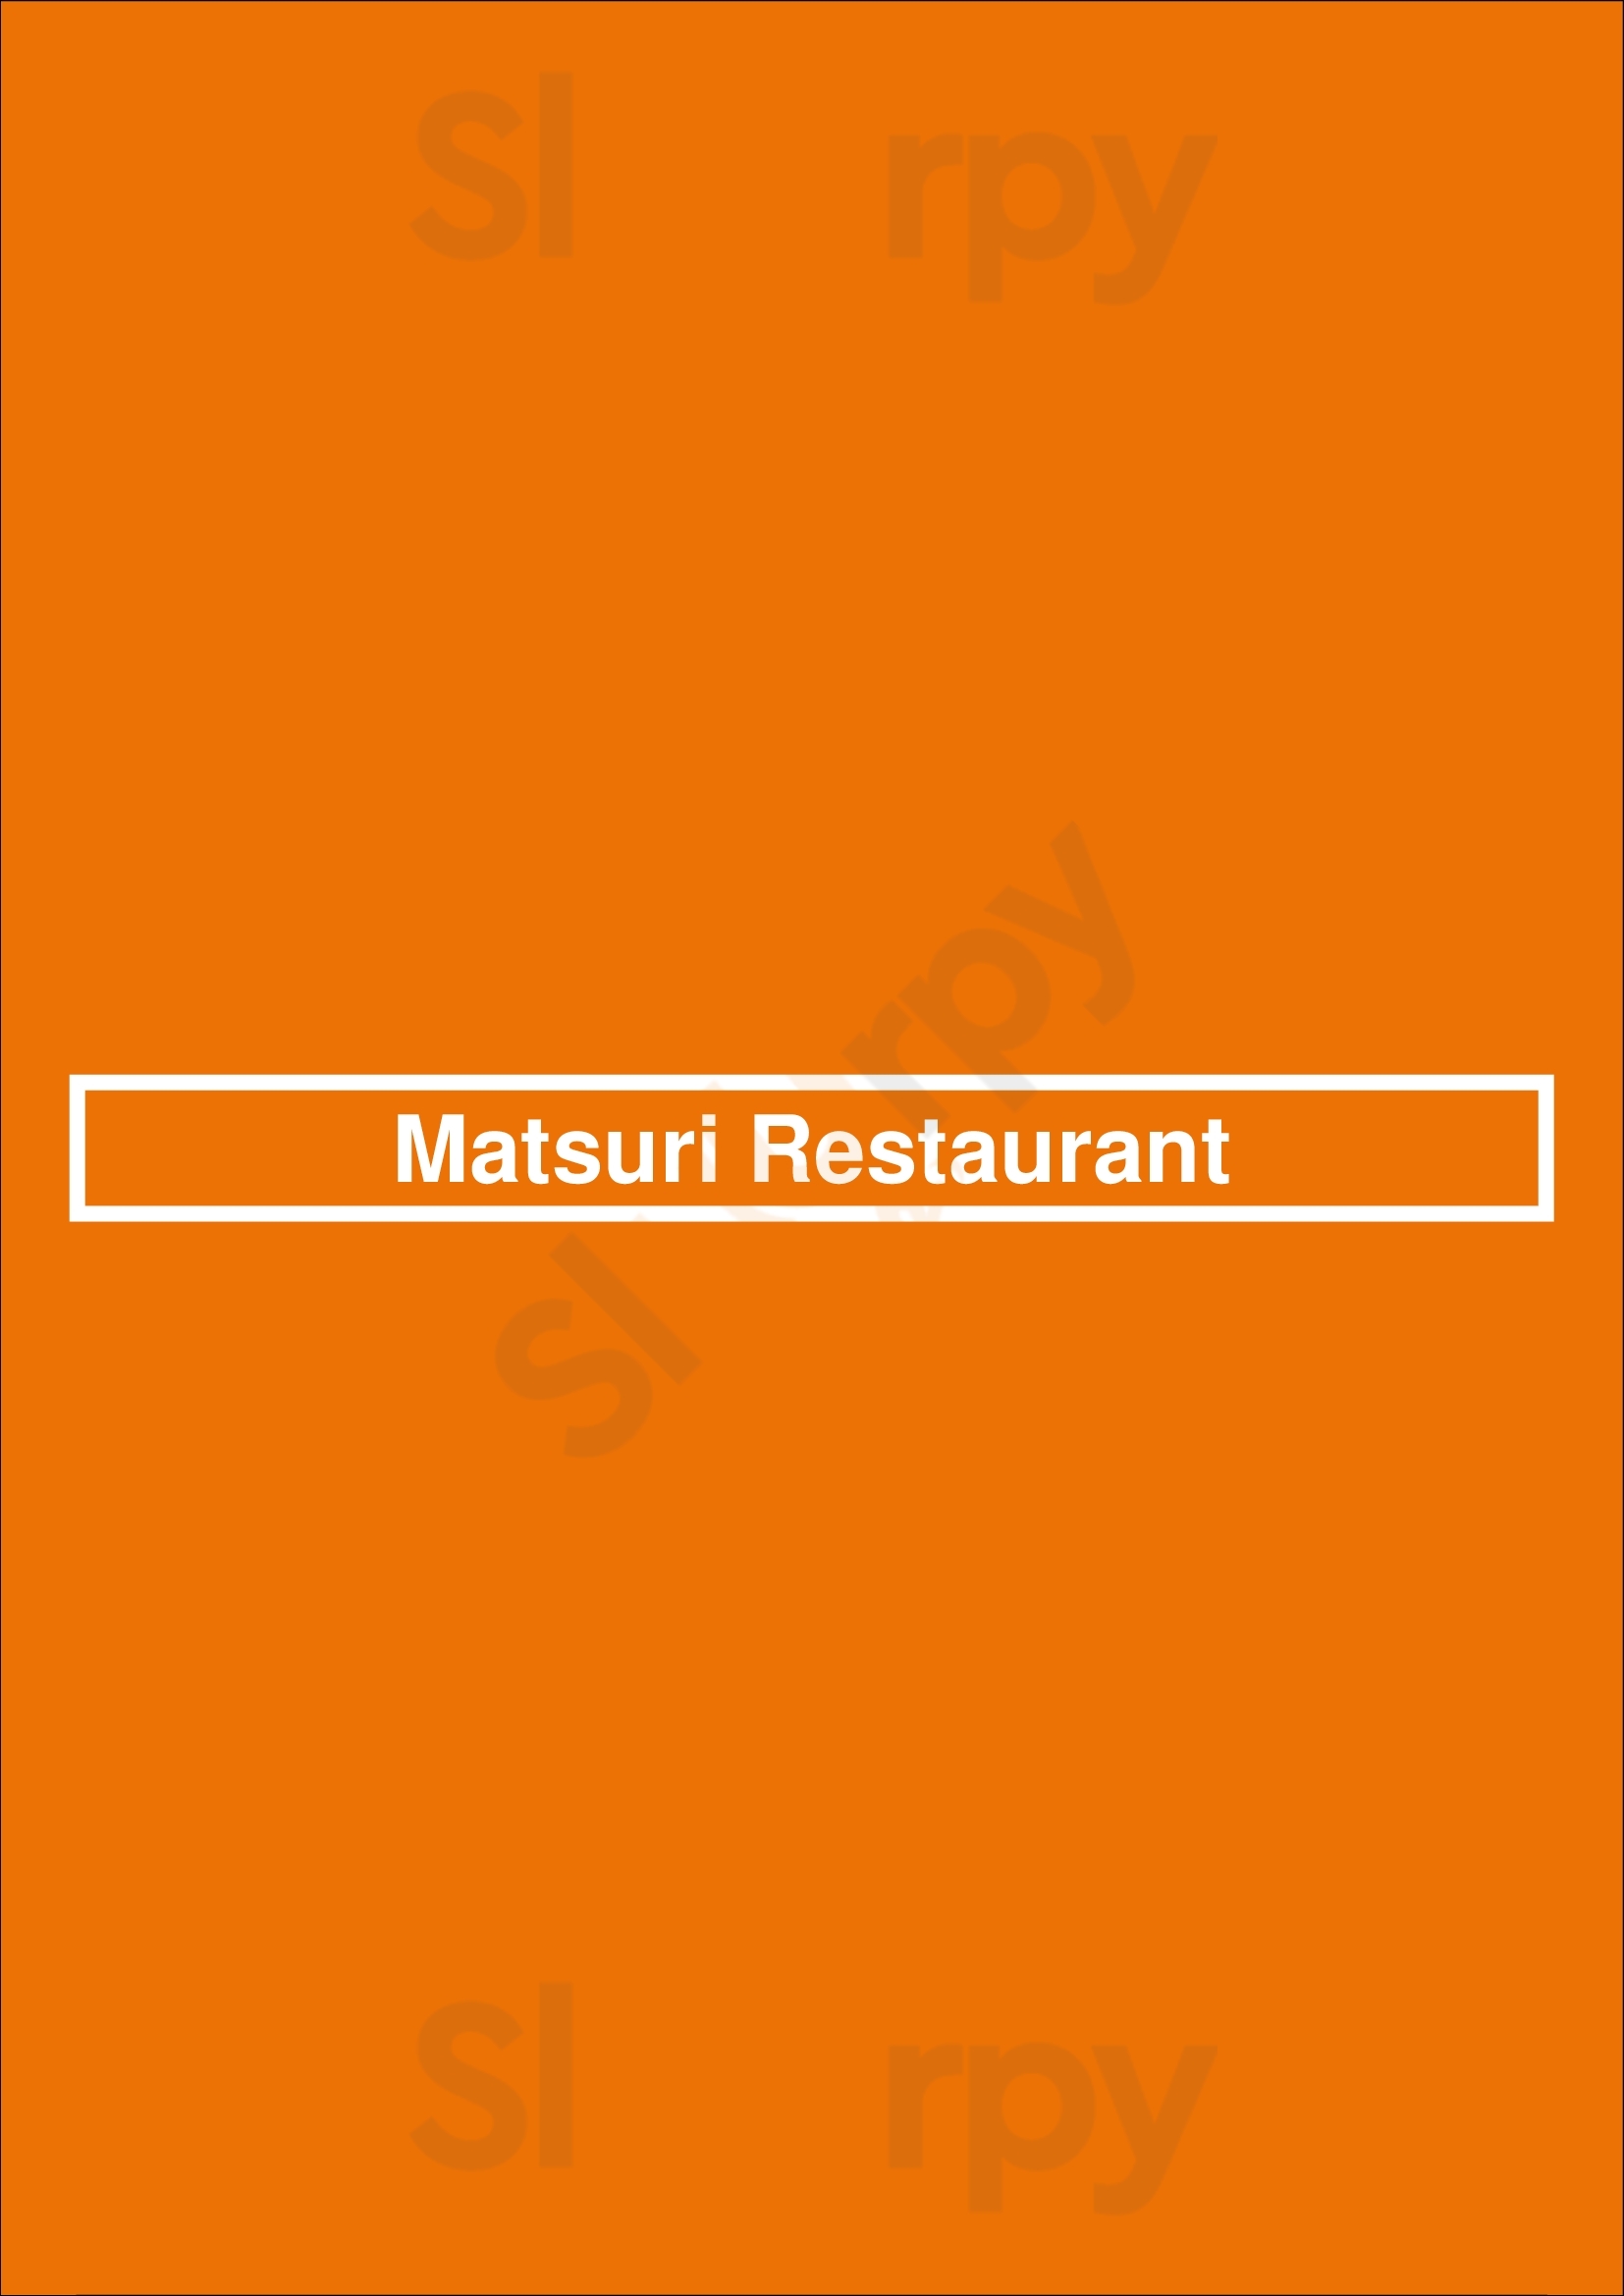 Matsuri Restaurant Baltimore Menu - 1